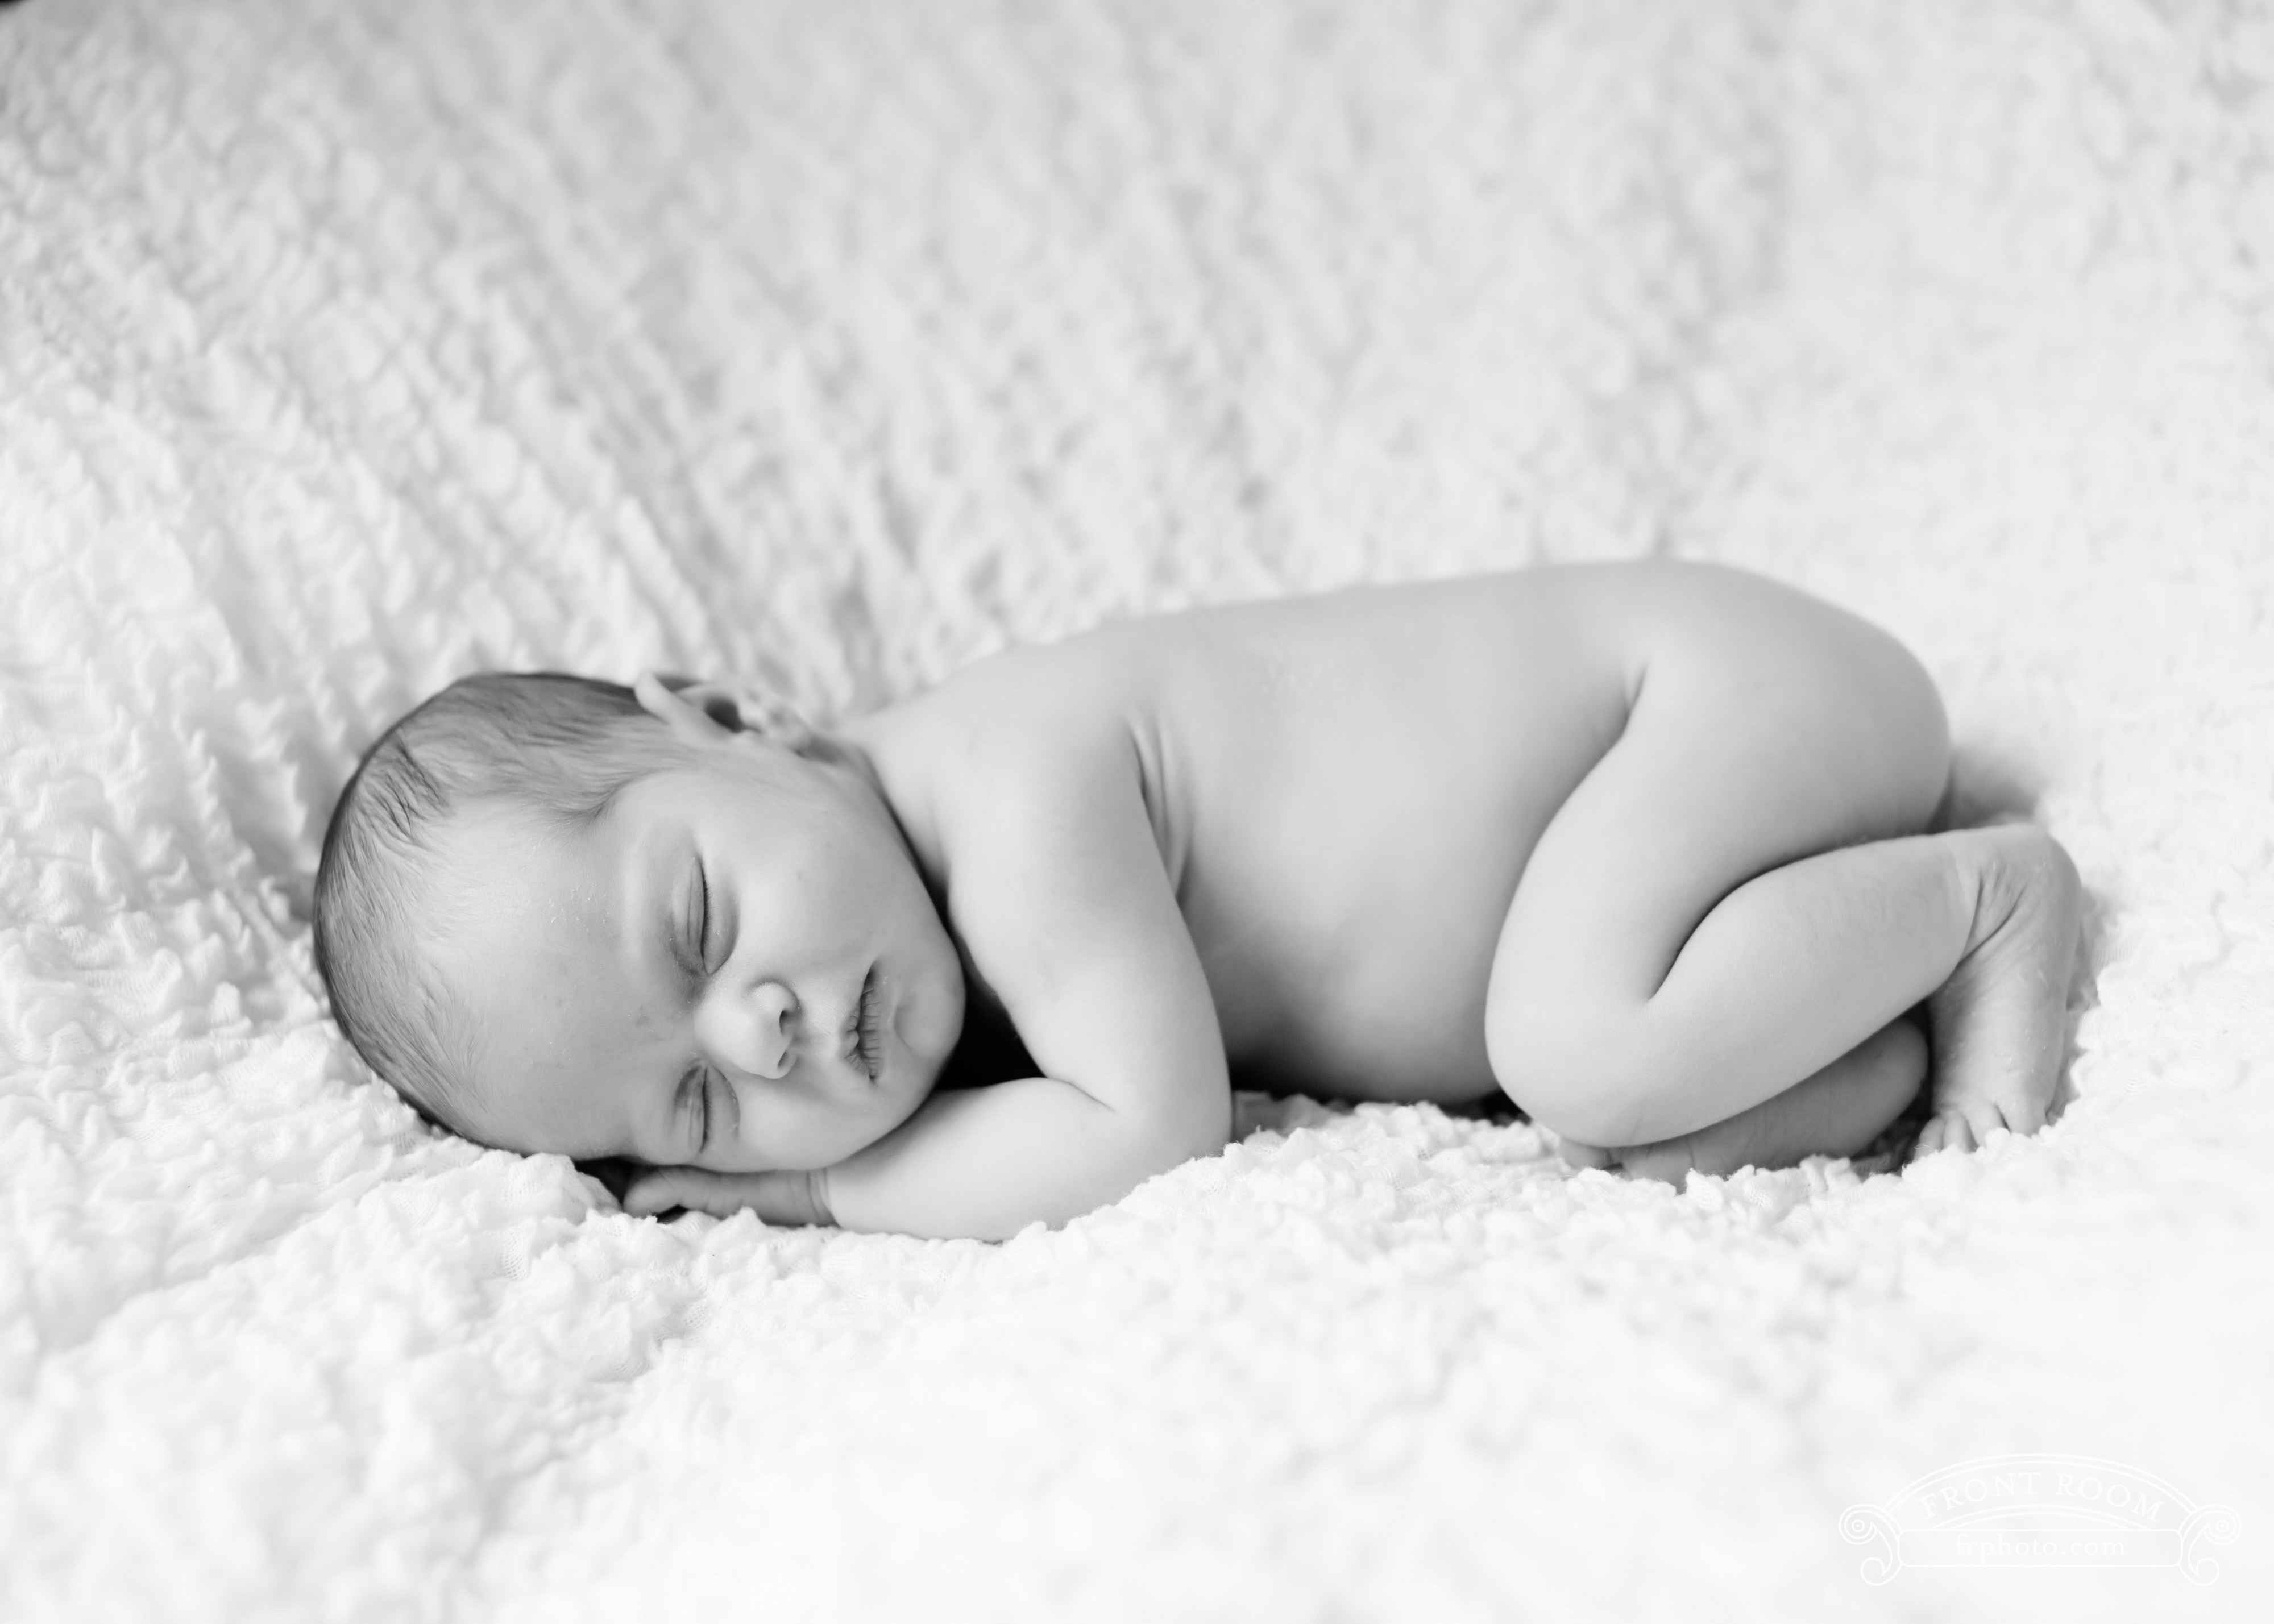 newborn baby girl in black and white